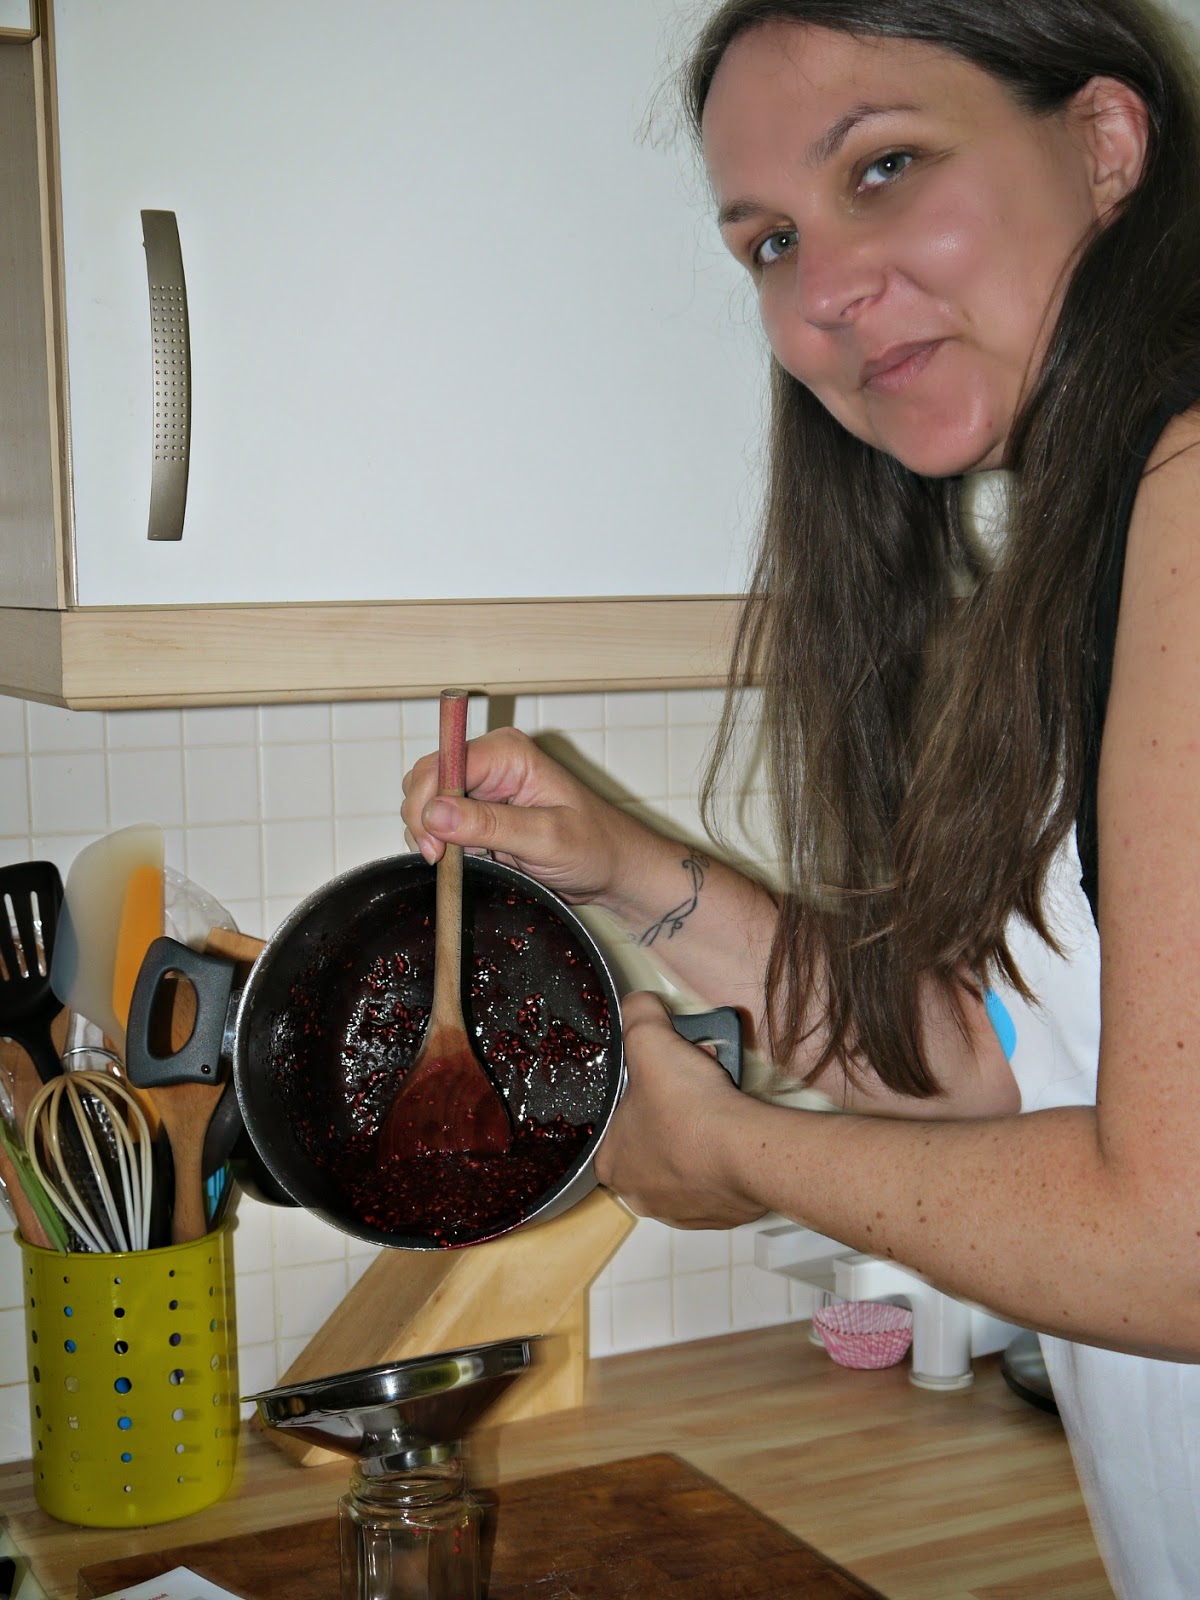 jam making